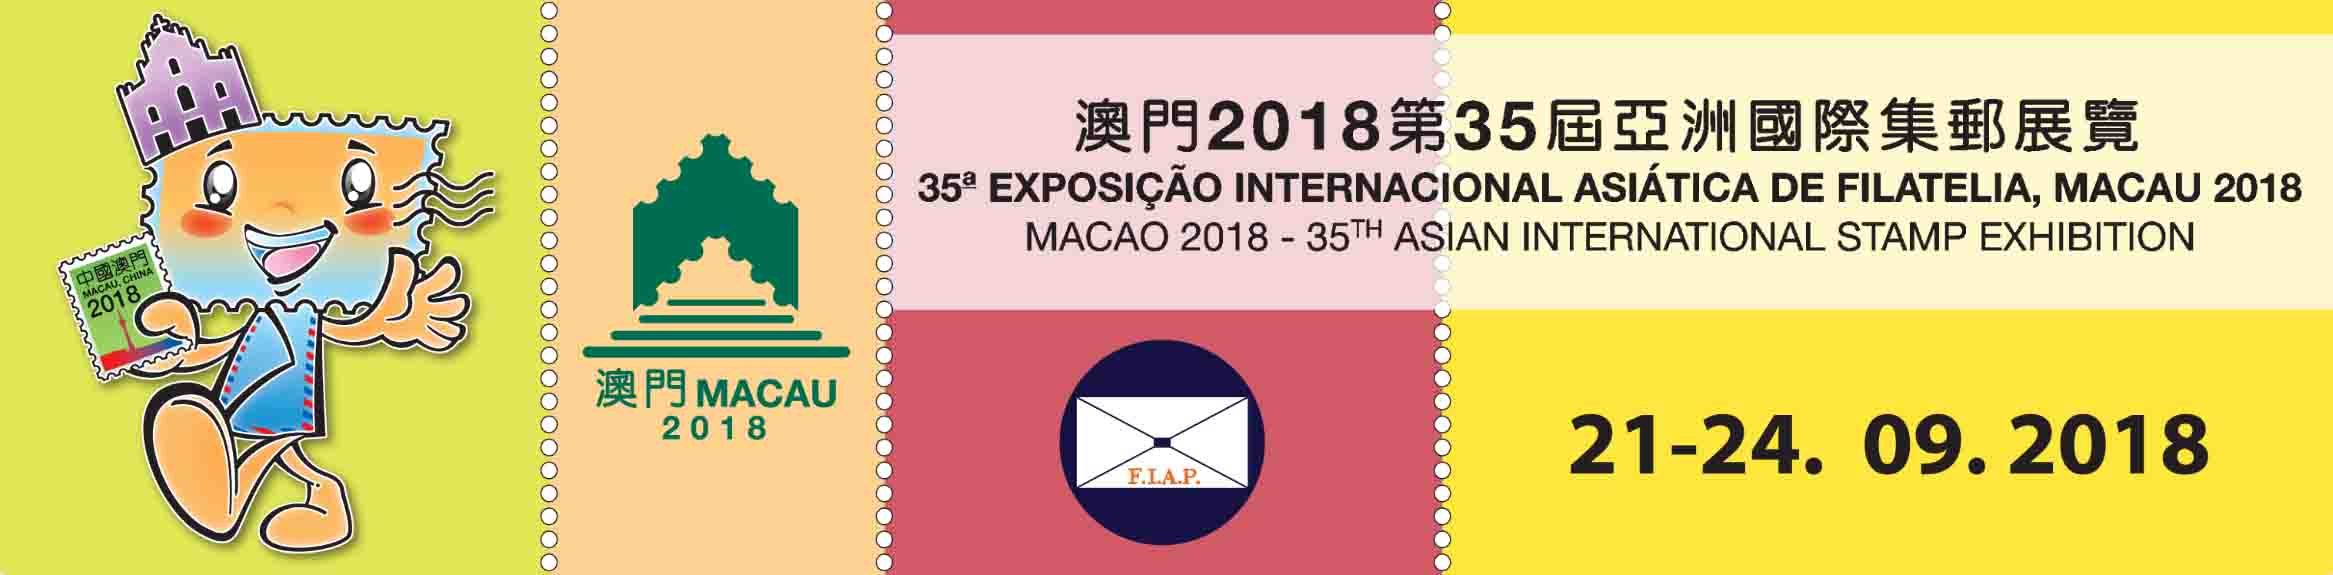 Exposição Internacional Asiática de Filatelia,Macau 2018